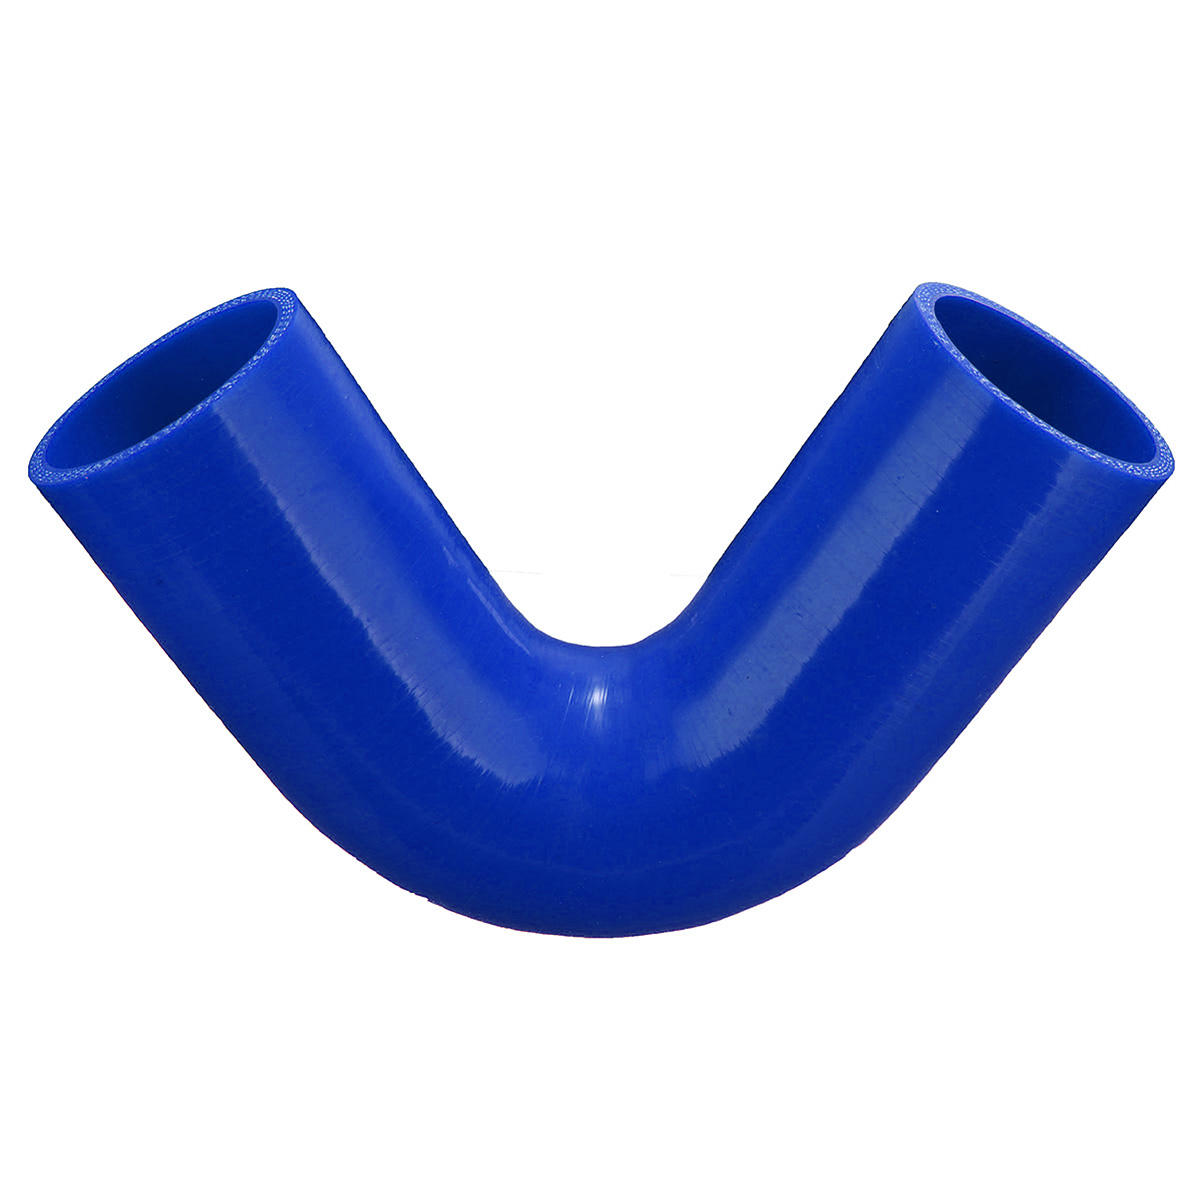 51-63 mm 120 graden blauwe siliconen buis 150 mm lengte siliconen vacuümslangslang turbo koelvloeistofbuis